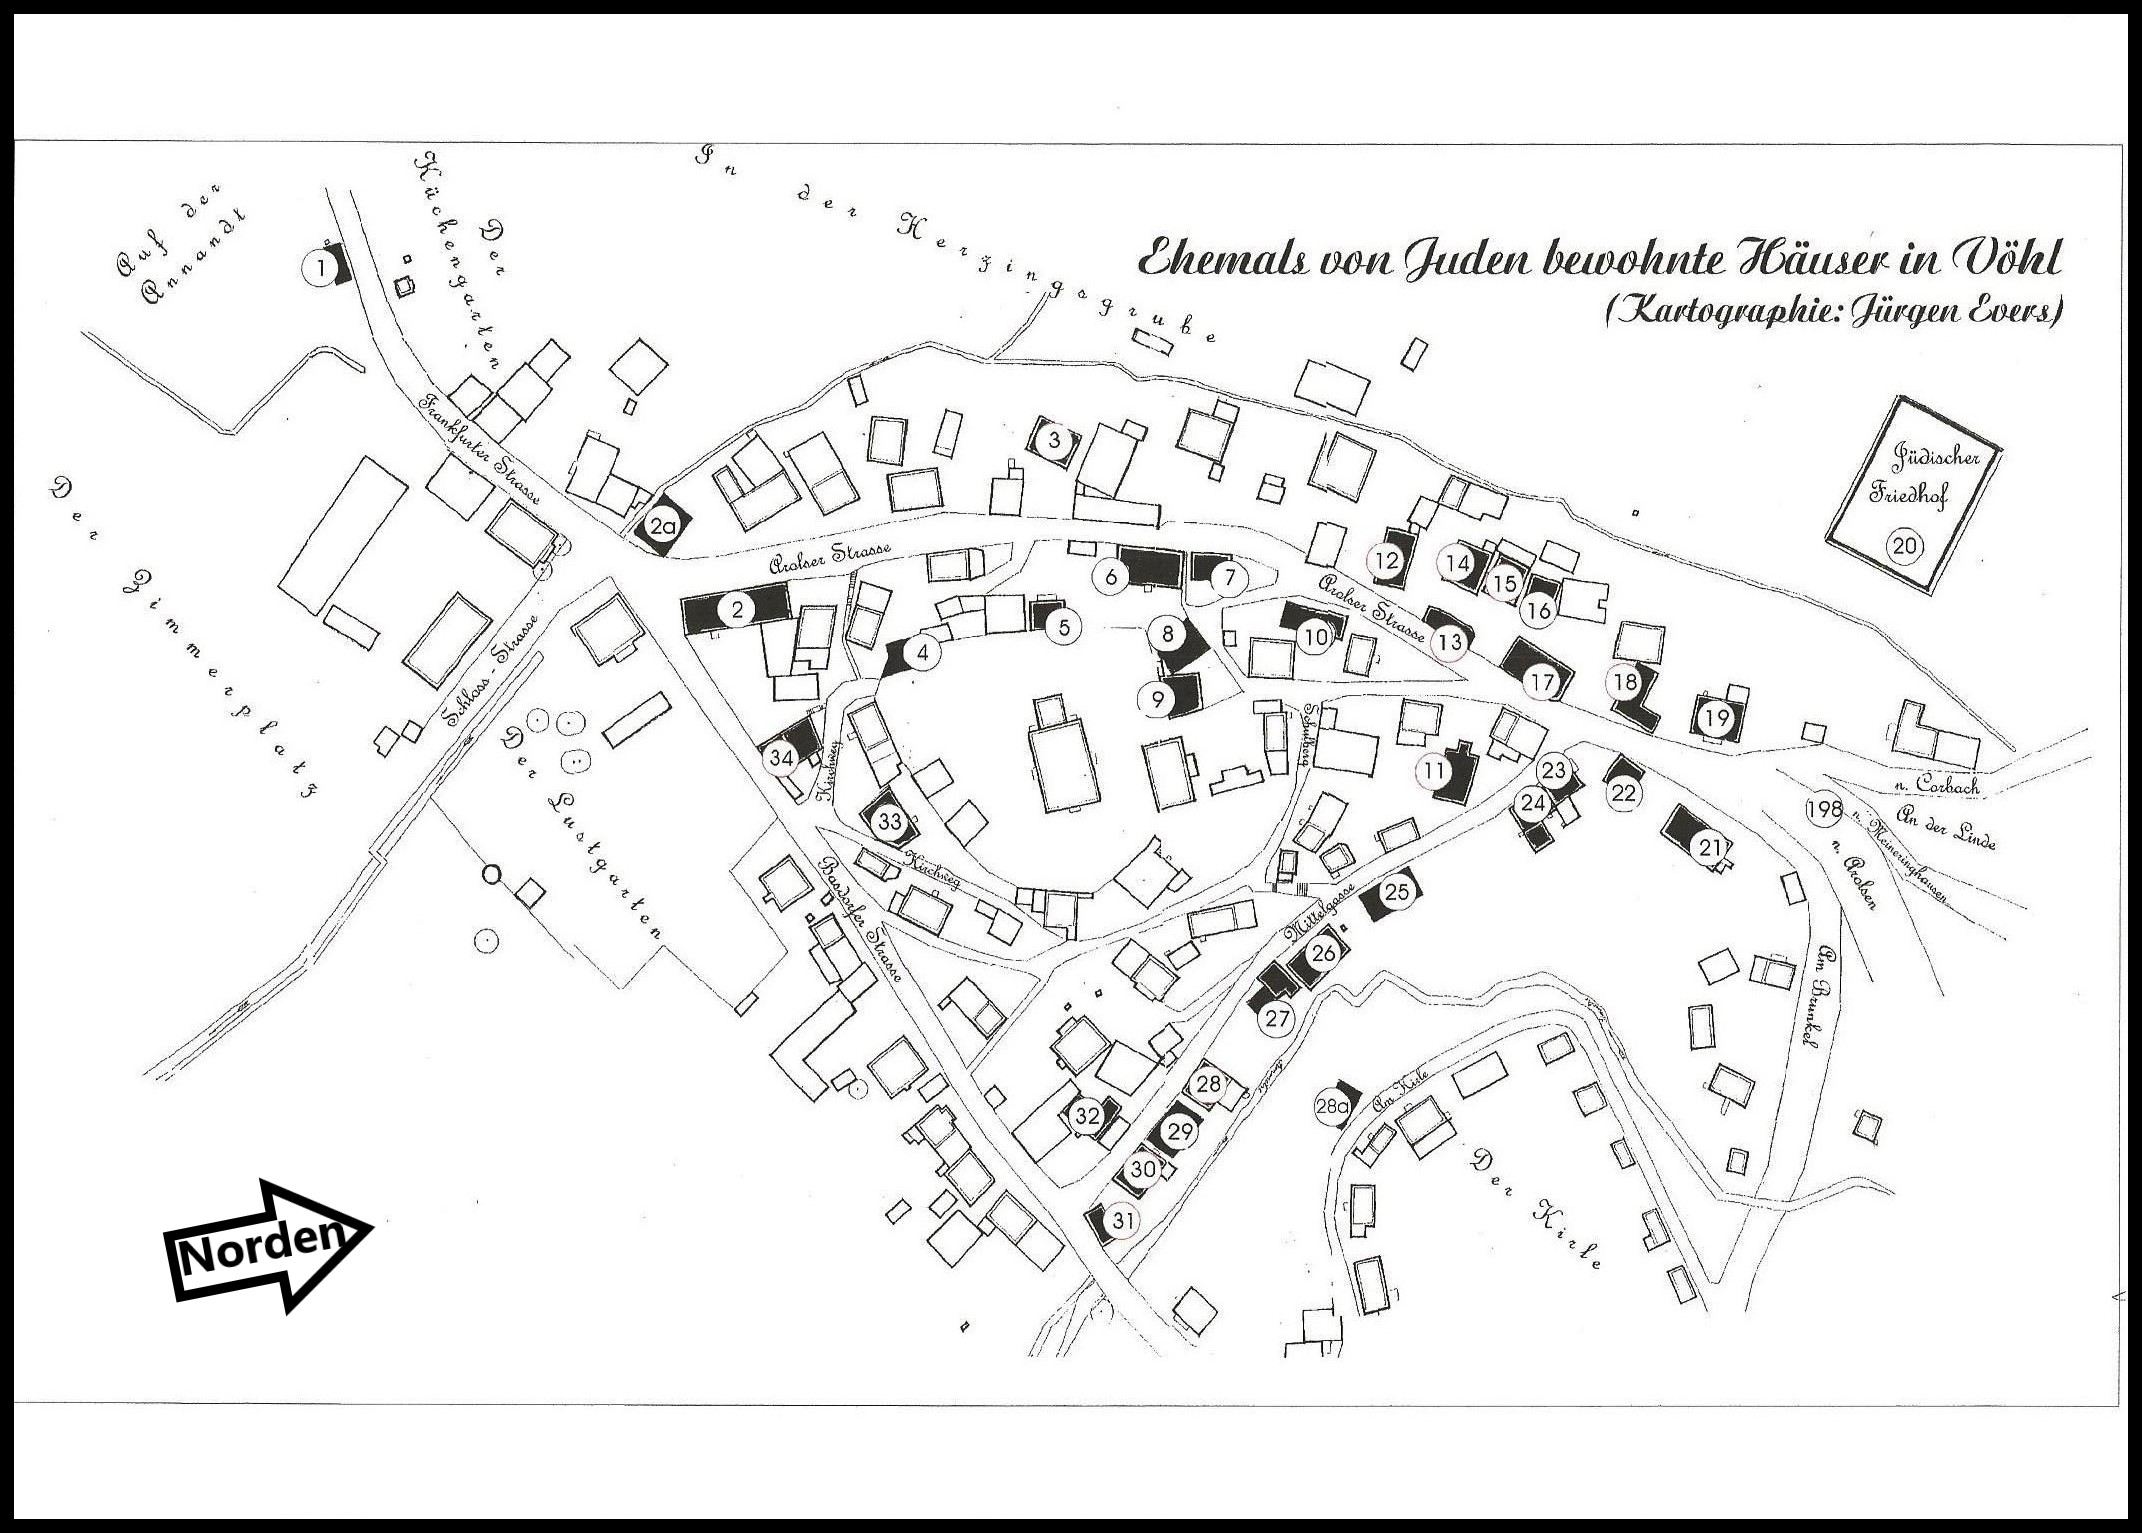 Straßenplan des Ortskerns von Vöhl mit markierten ehemaligen jüdischen Häusern